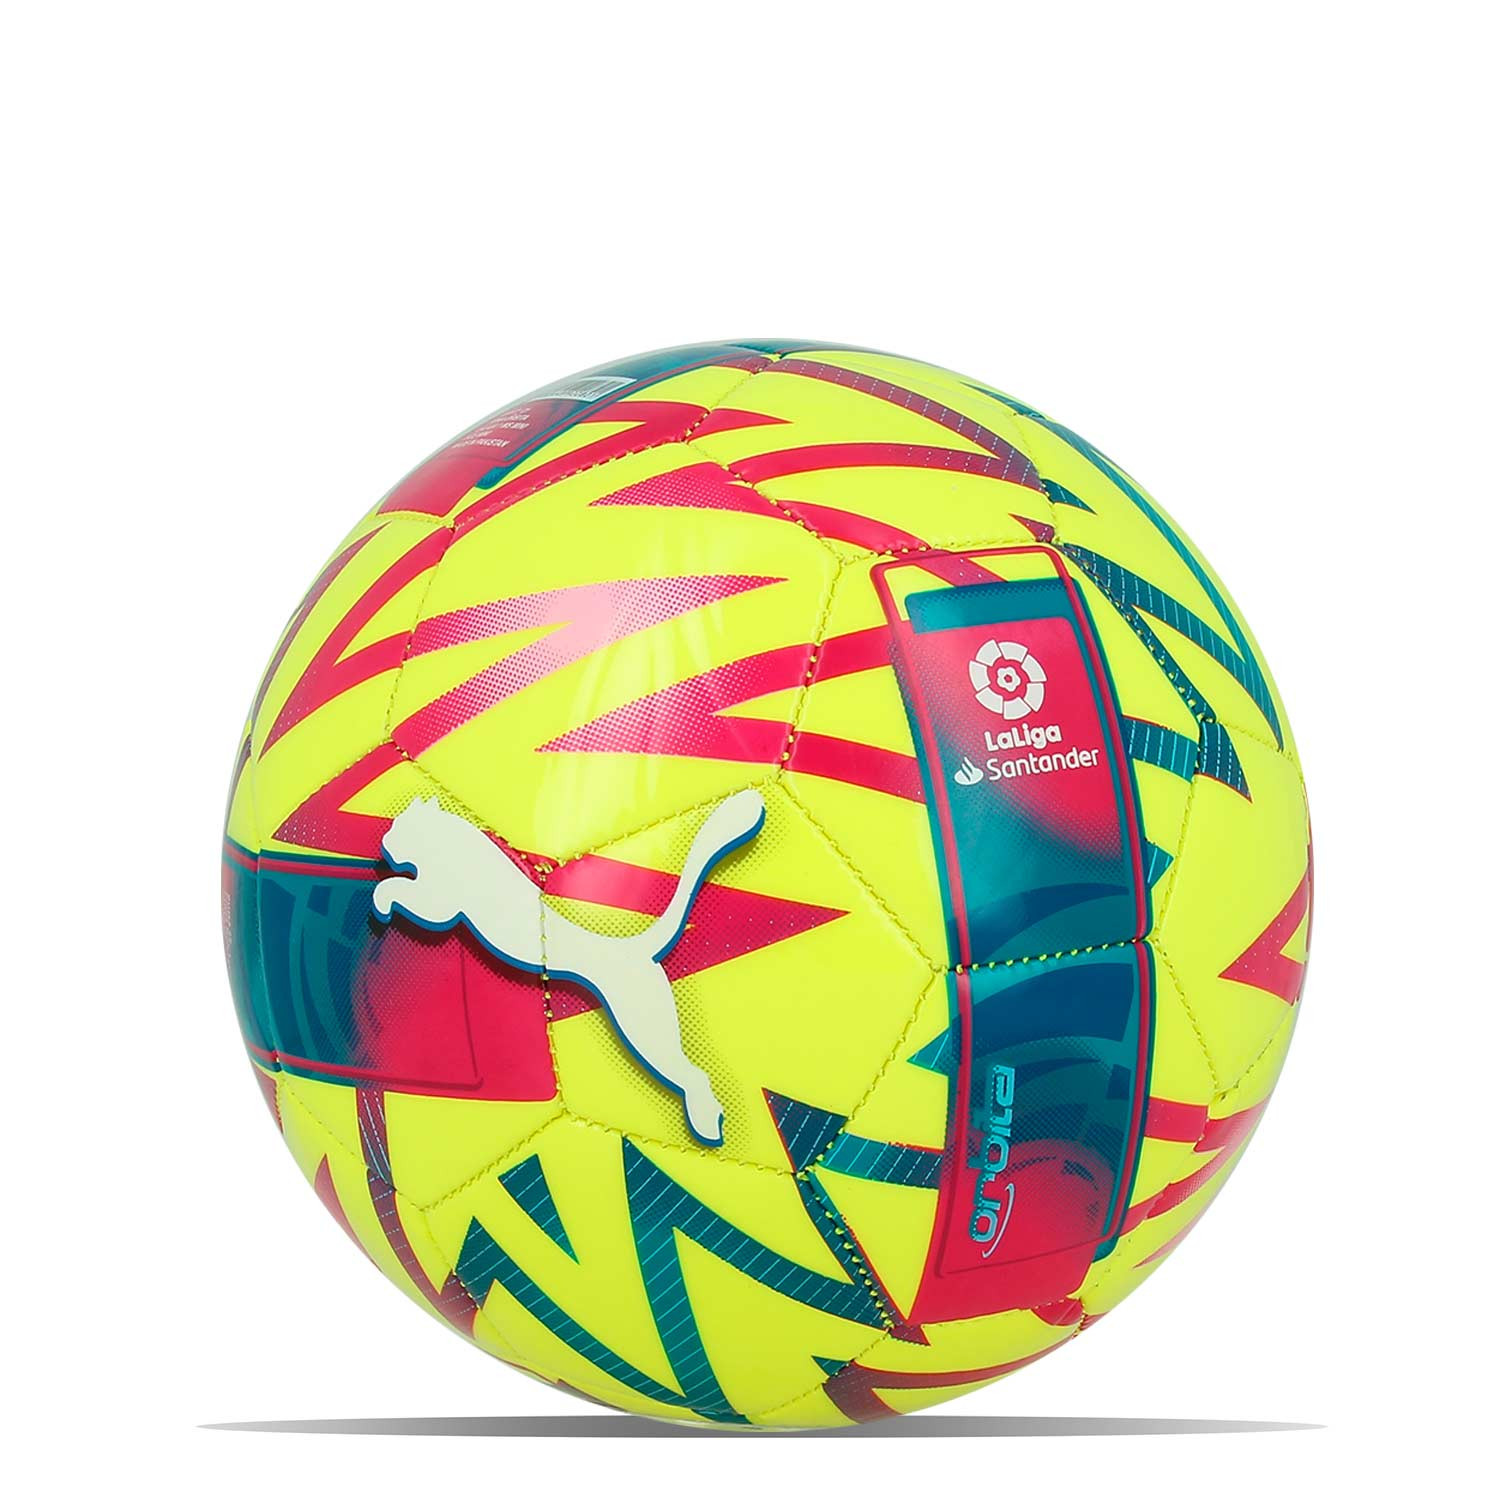 Futbolmania on X: ⚽️ Este será el balón oficial con el que se jugará la  nueva LaLiga EA Sports 💪🏻 Tiene el fucsia como color principal y  representa el poder del fútbol